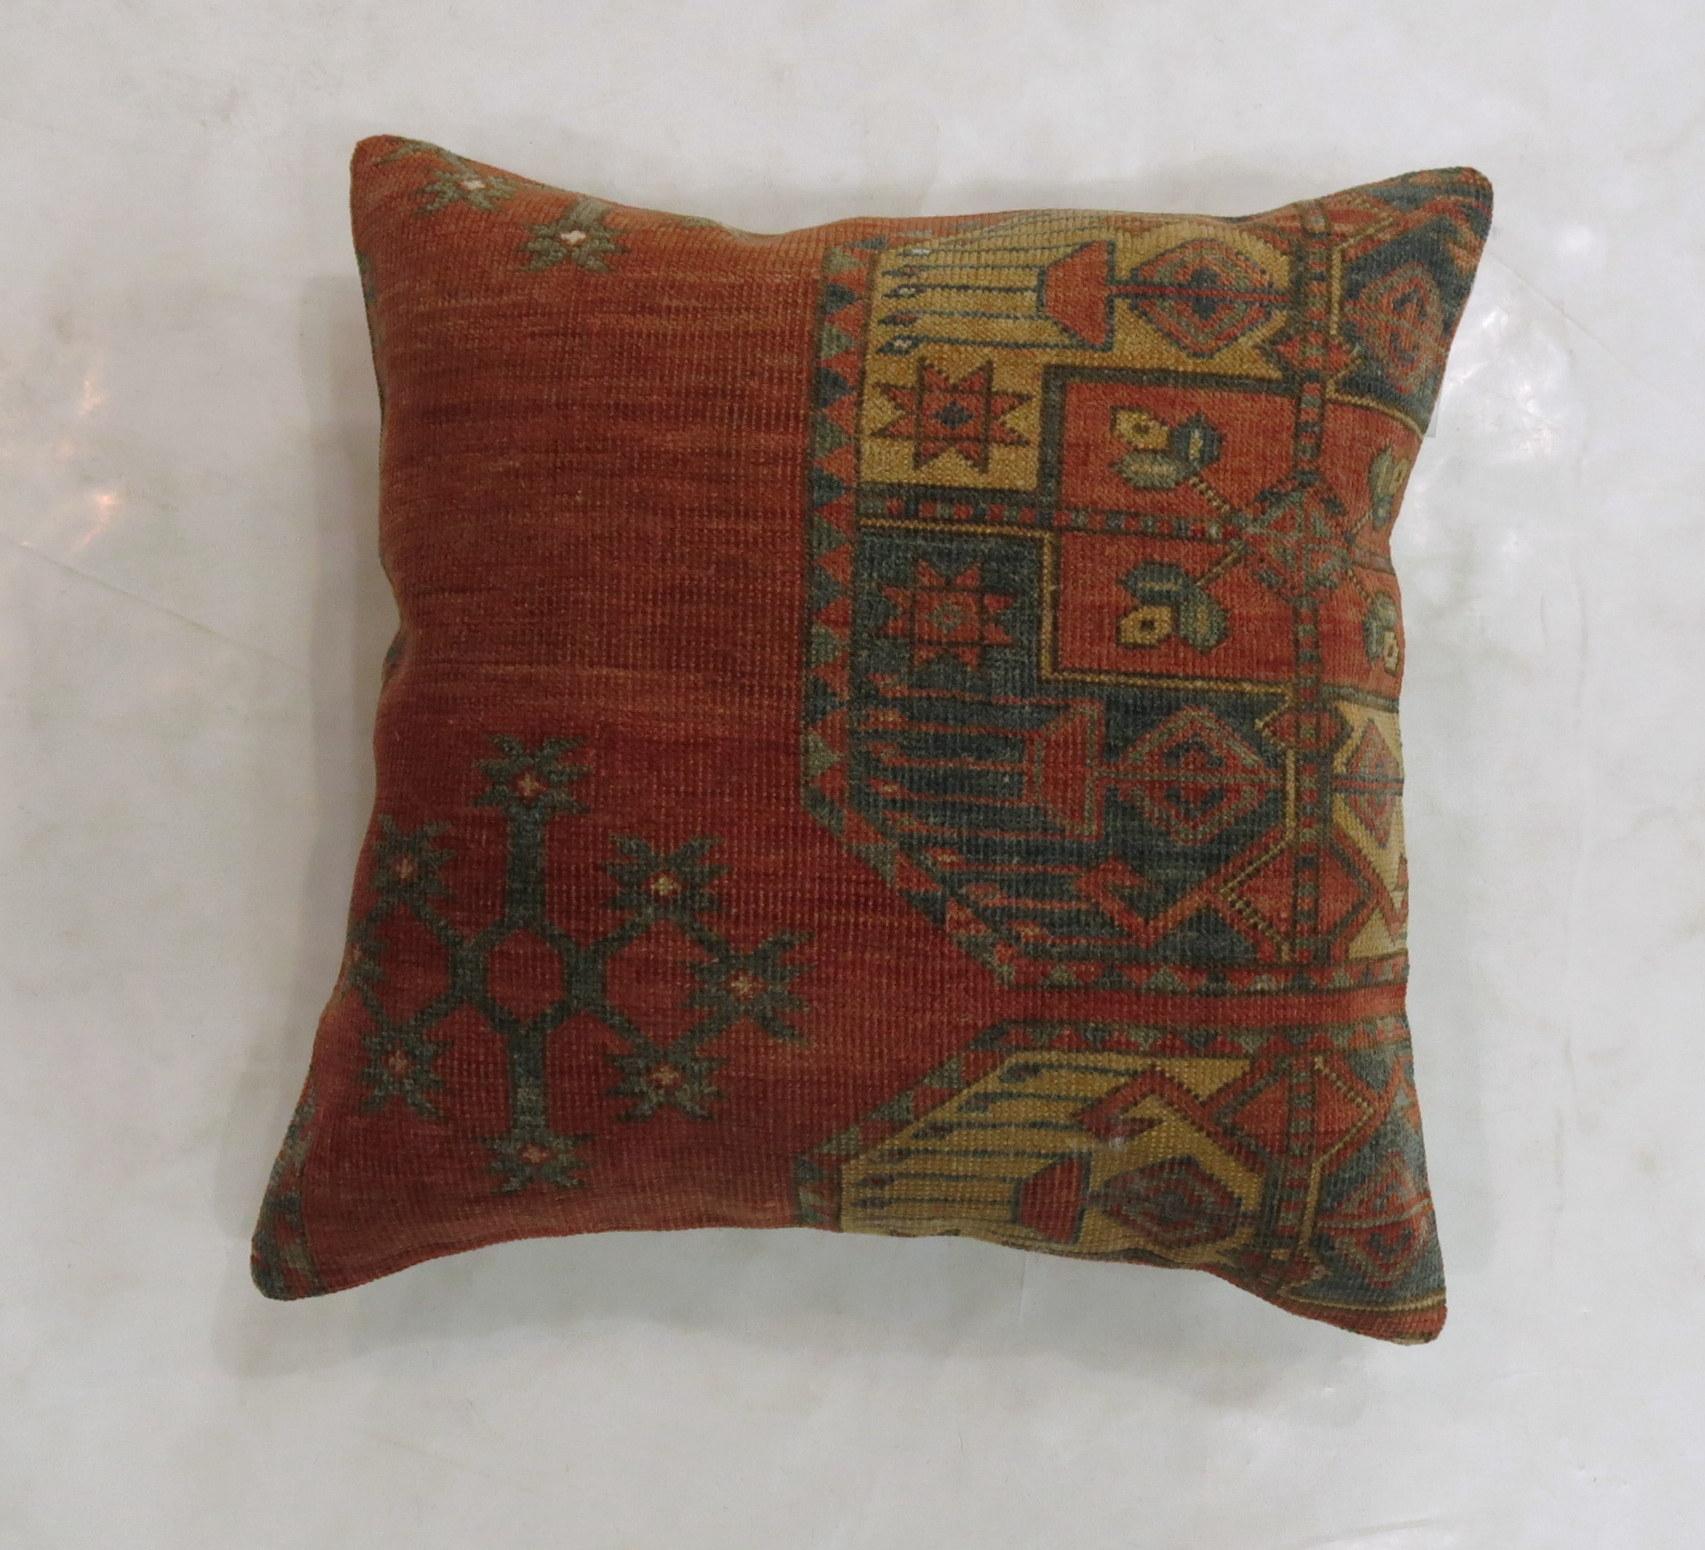 Oreiller fabriqué à partir d'un tapis Ersari antique du XIXe siècle, avec dos en coton et fermeture à glissière.

Mesures : 20'' x 20''.